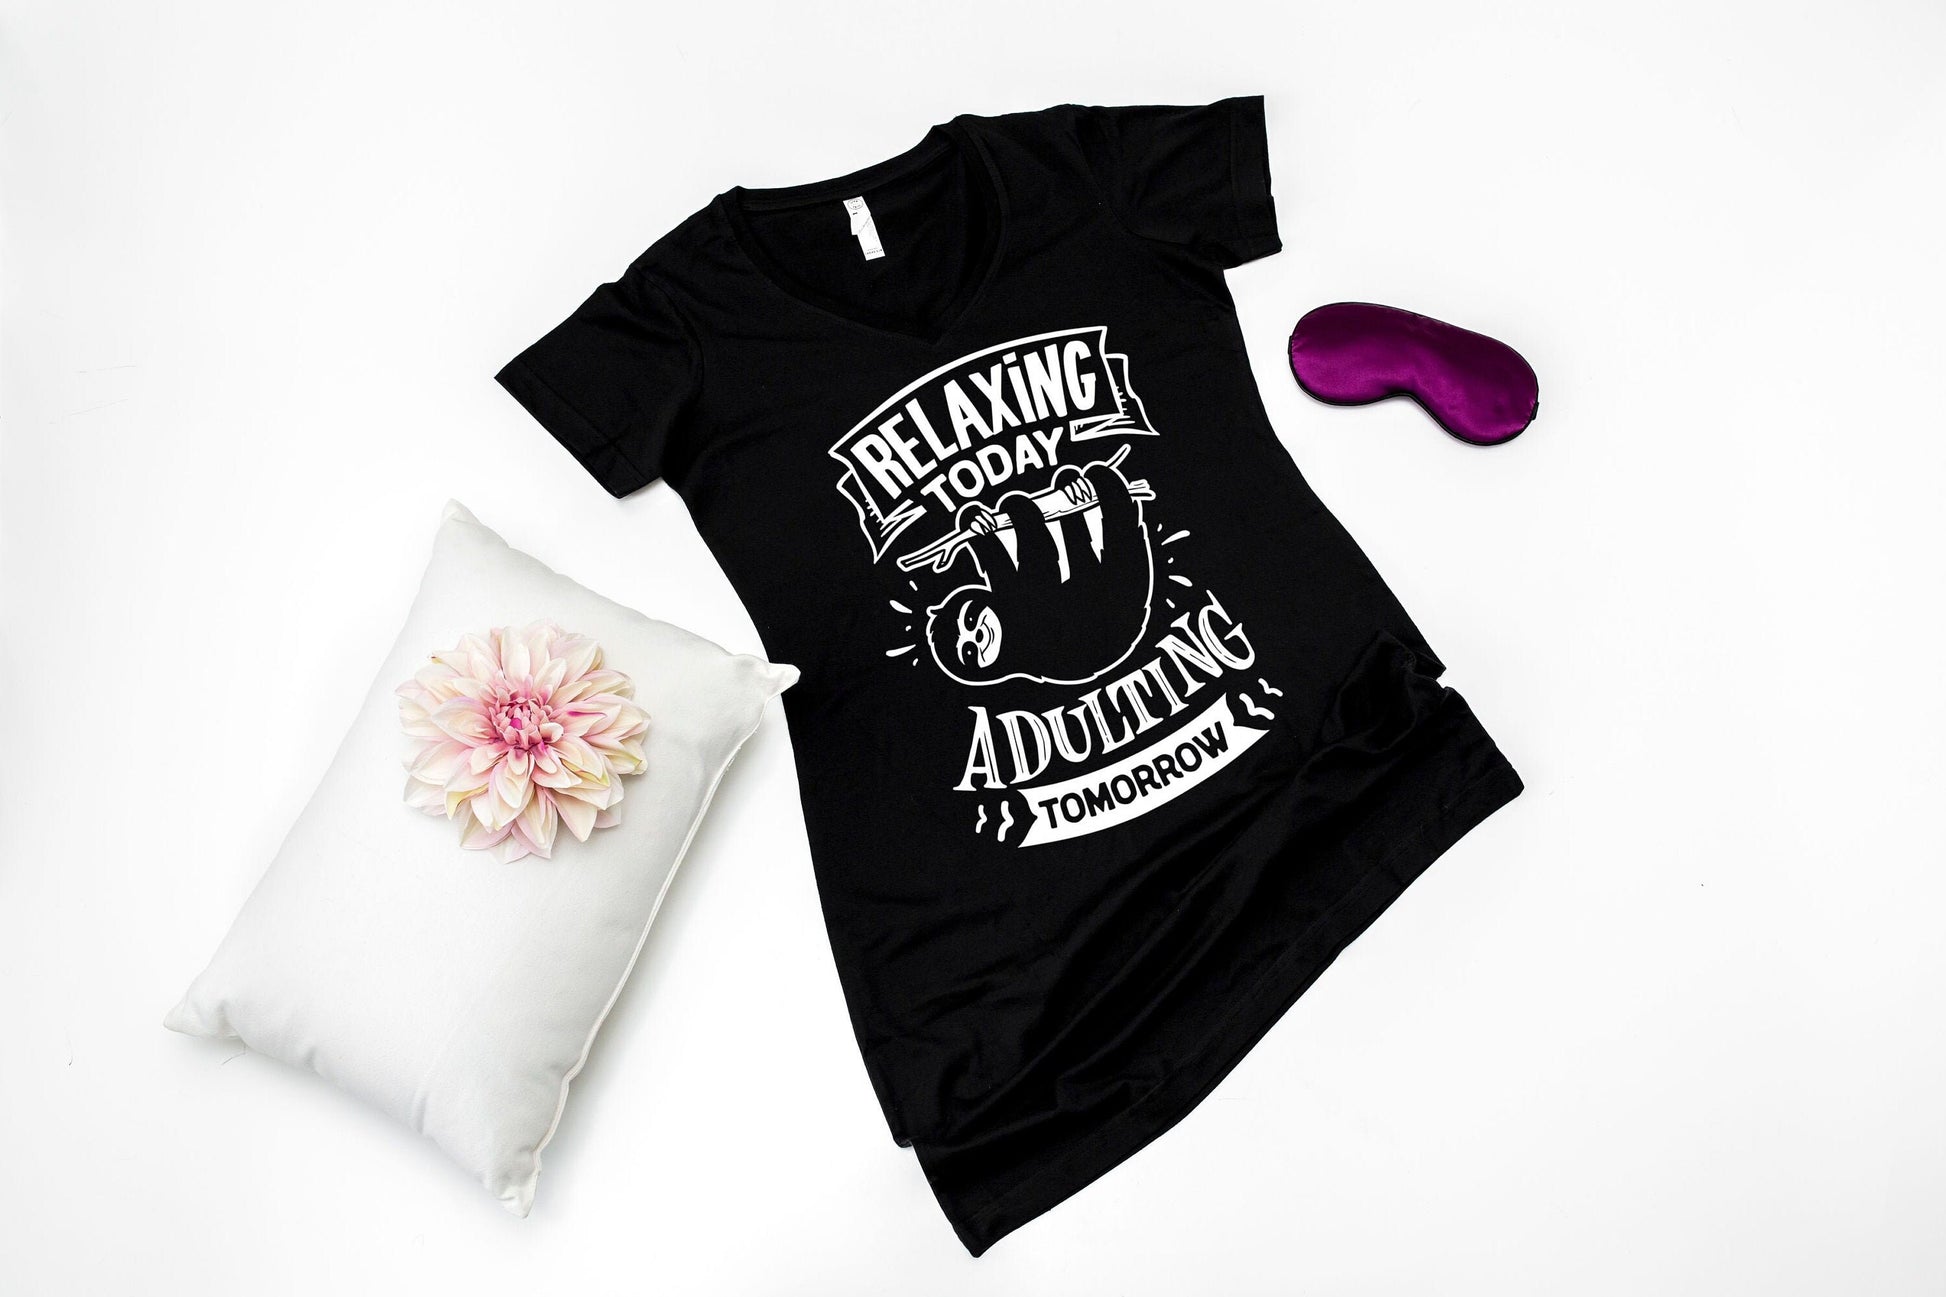 Relaxing Today Adulting Tomorrow V-neck Night Shirt - nighty - sleep shirt - long night shirt - women's pajamas - lounge shirt